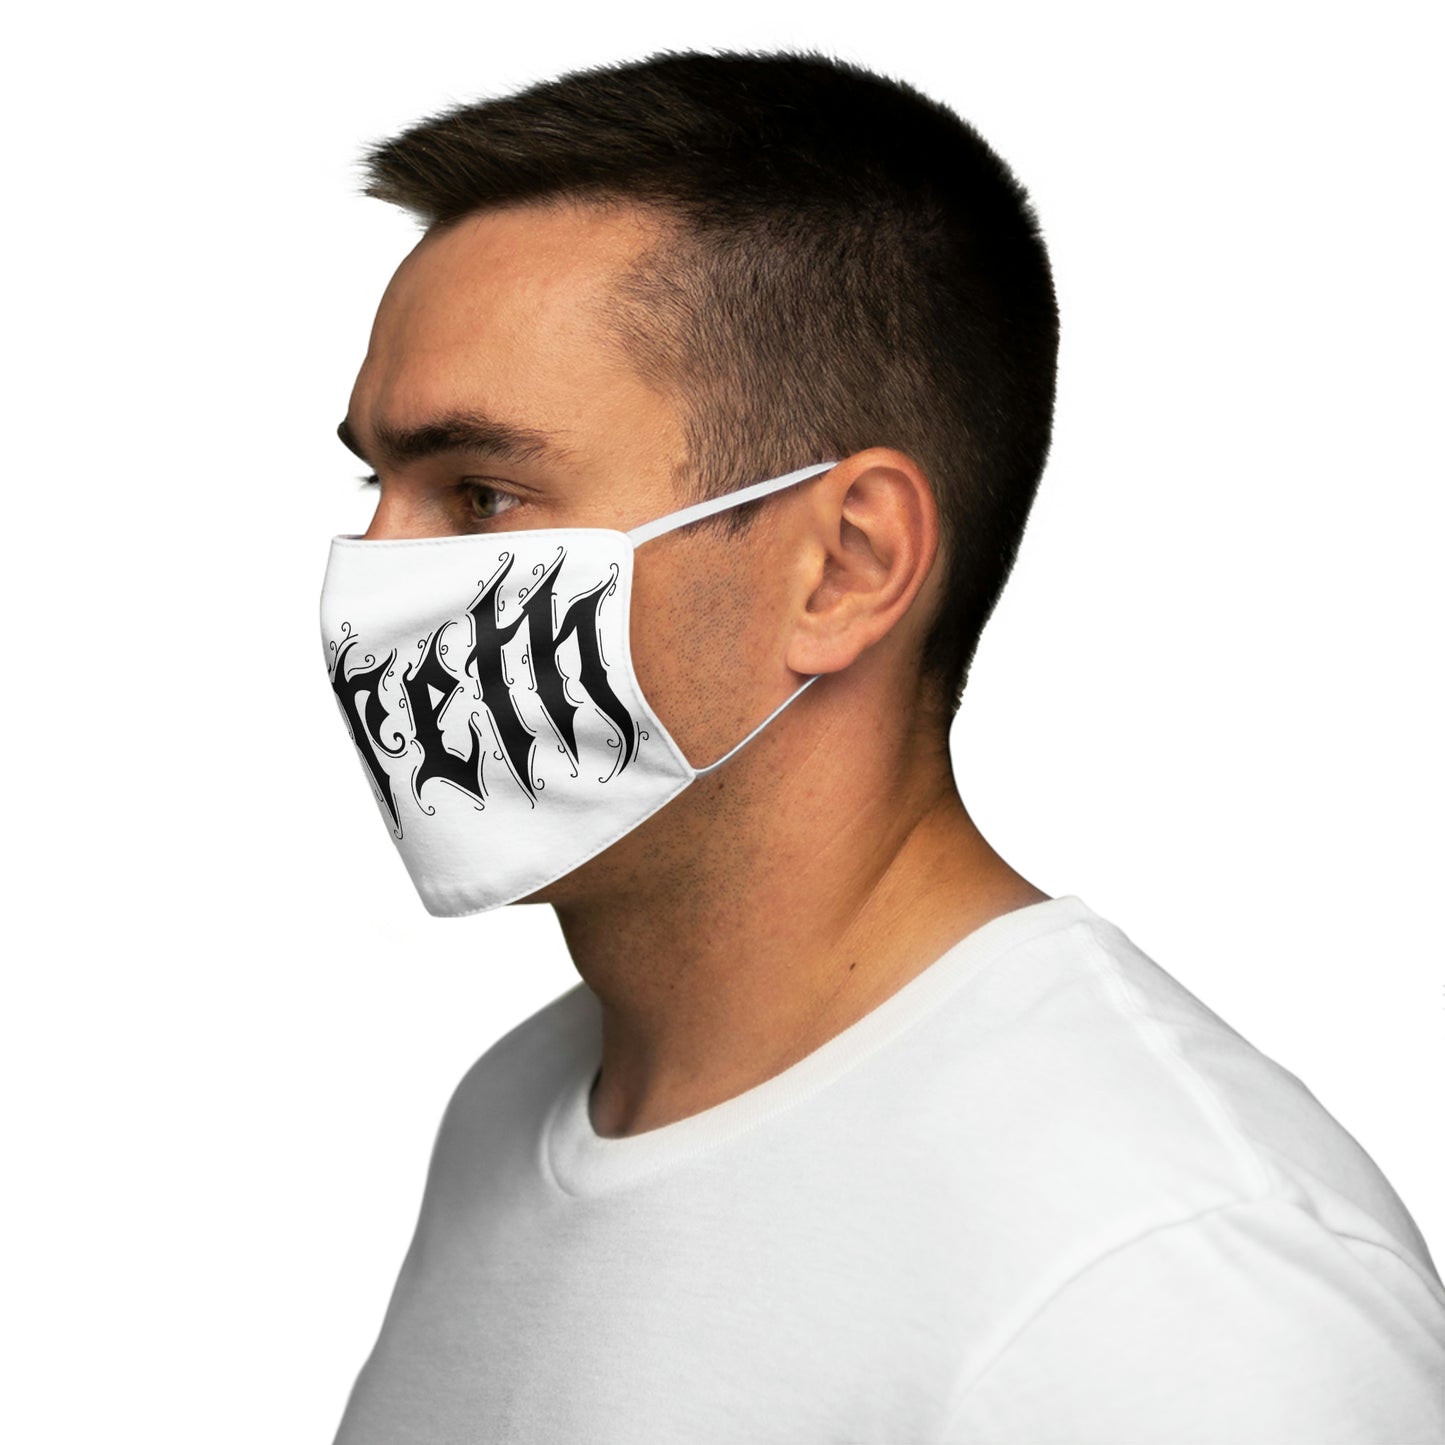 Sereth - Logo Face Mask (Europe)